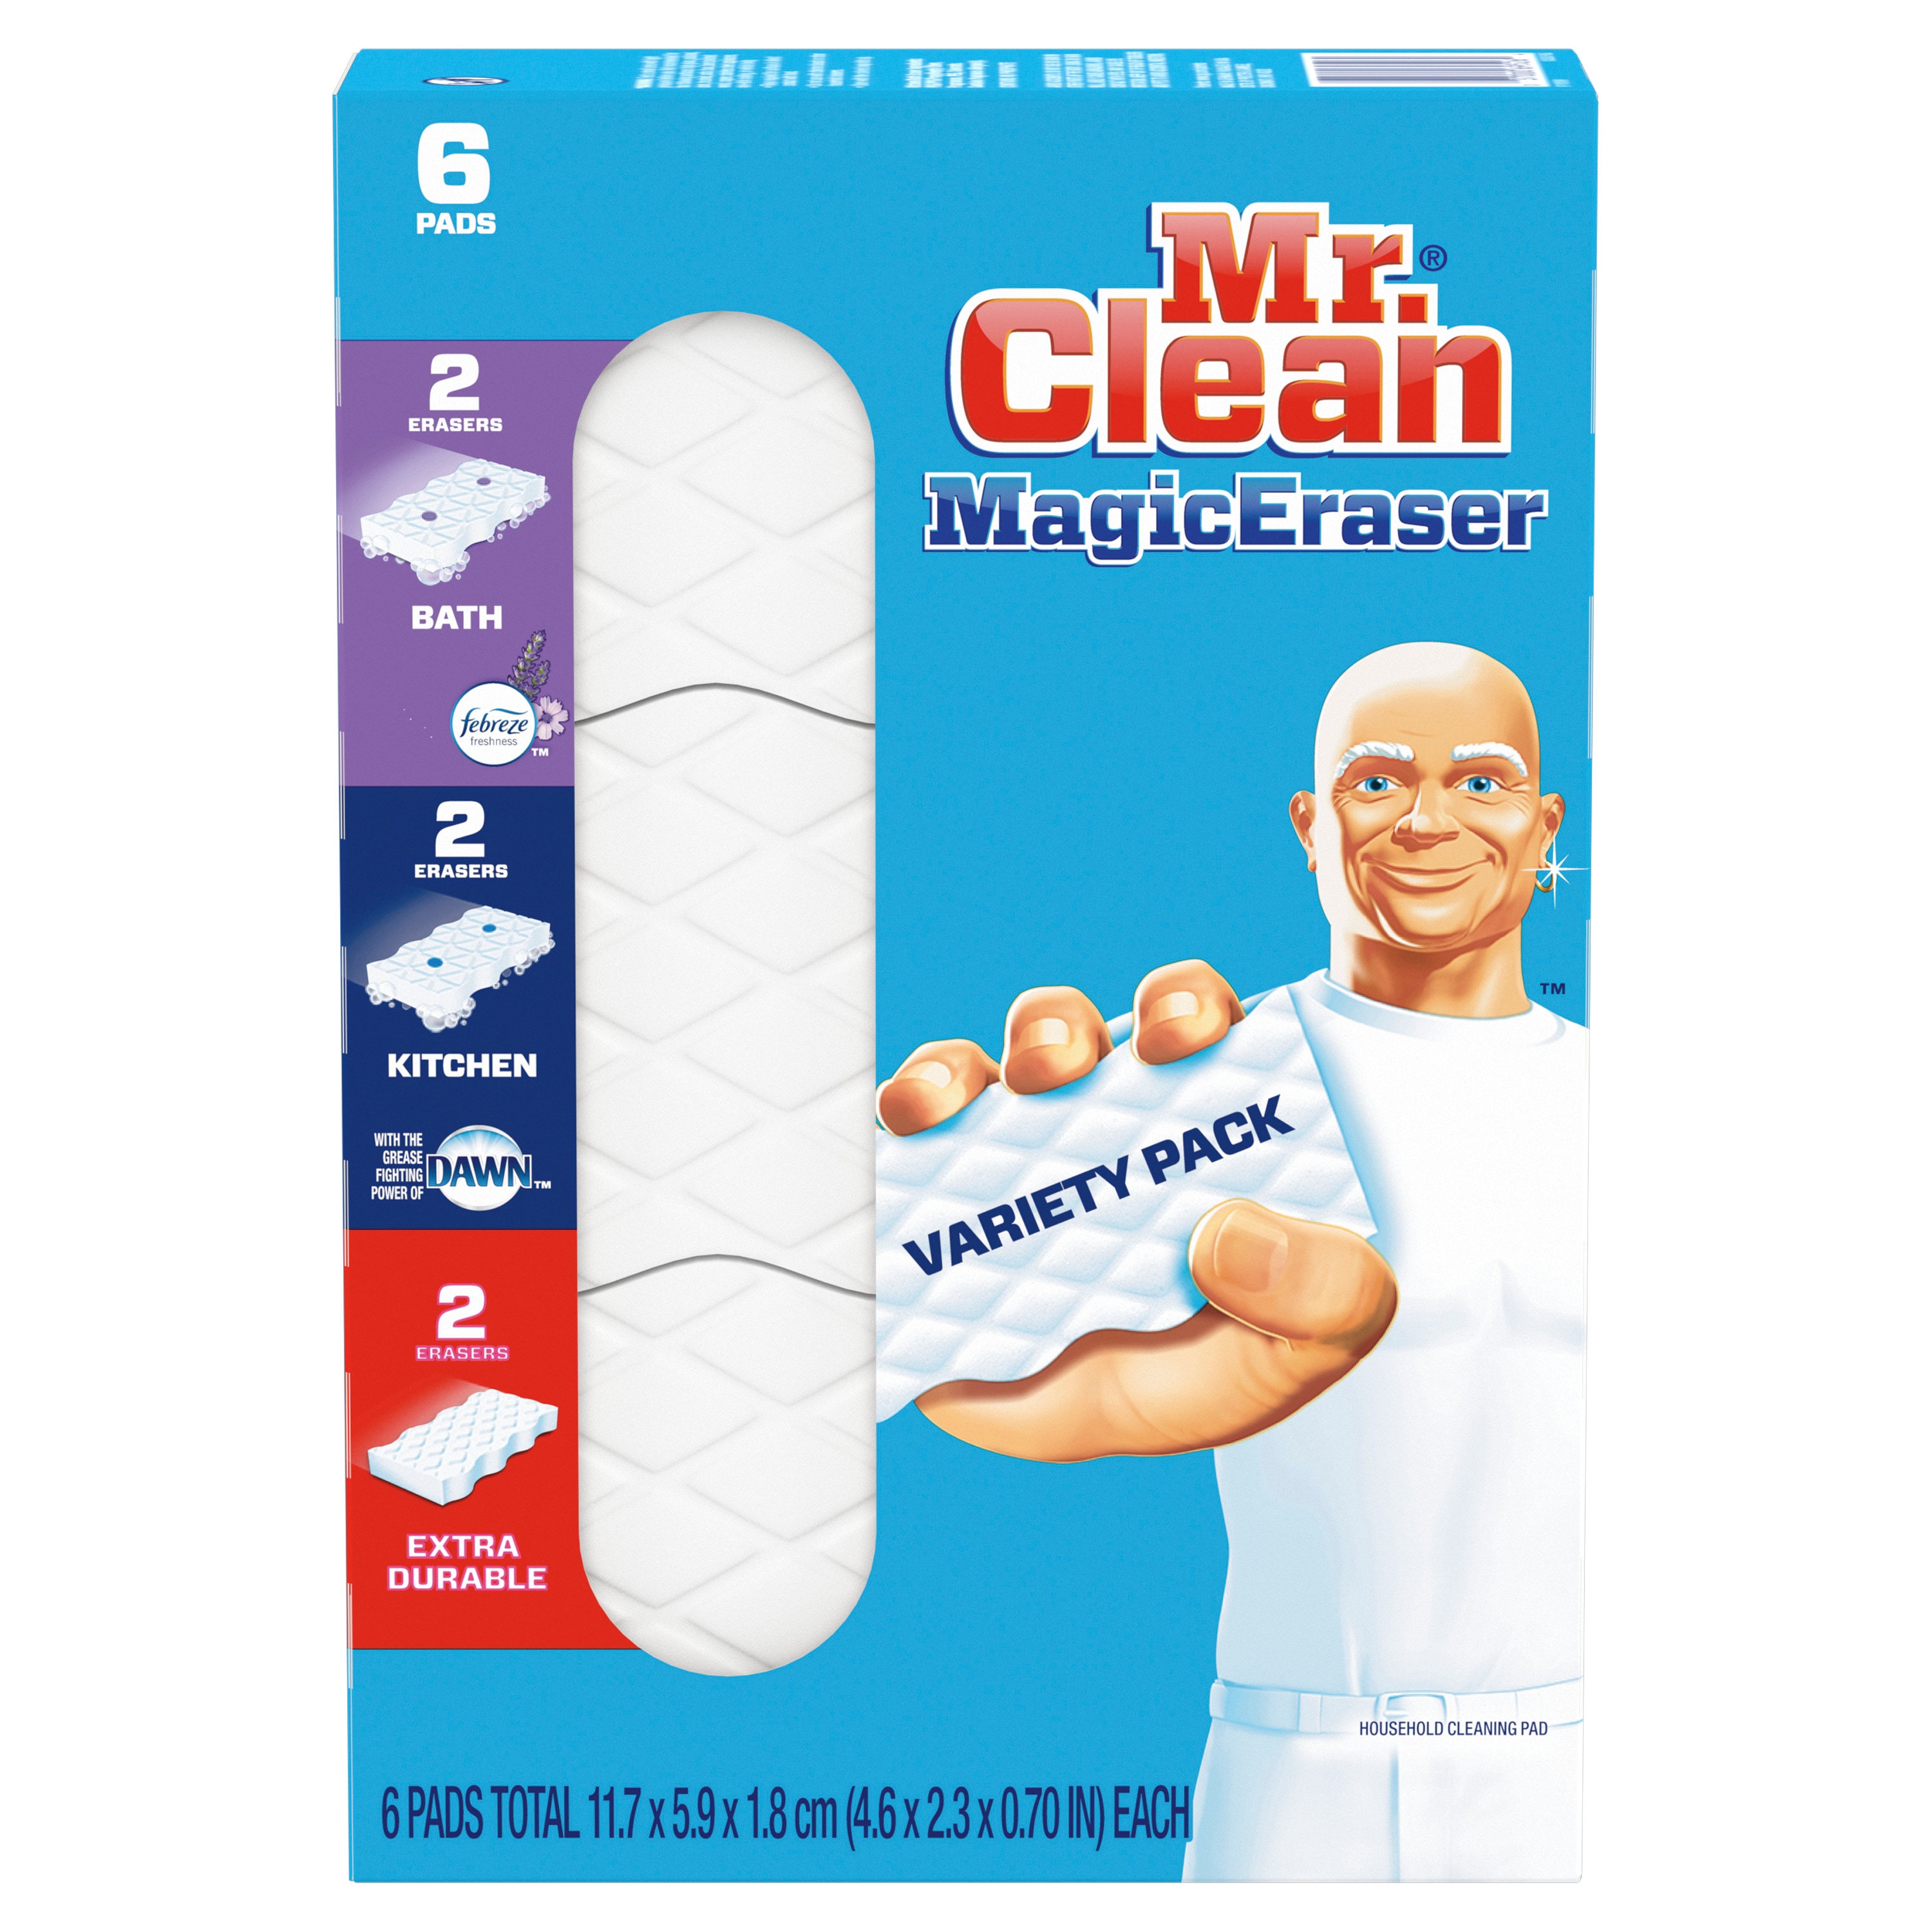 Bạn cần một giải pháp tẩy vết bẩn hiệu quả và nhanh chóng? Mr. Clean Magic Eraser chính là giải pháp thông minh đáng tin cậy cho bạn! Với công nghệ đặc biệt, sản phẩm có thể tẩy sạch những vết bẩn rắc rối nhất chỉ trong vài giây. Xem hình ảnh để chứng kiến sức mạnh của Mr. Clean Magic Eraser!